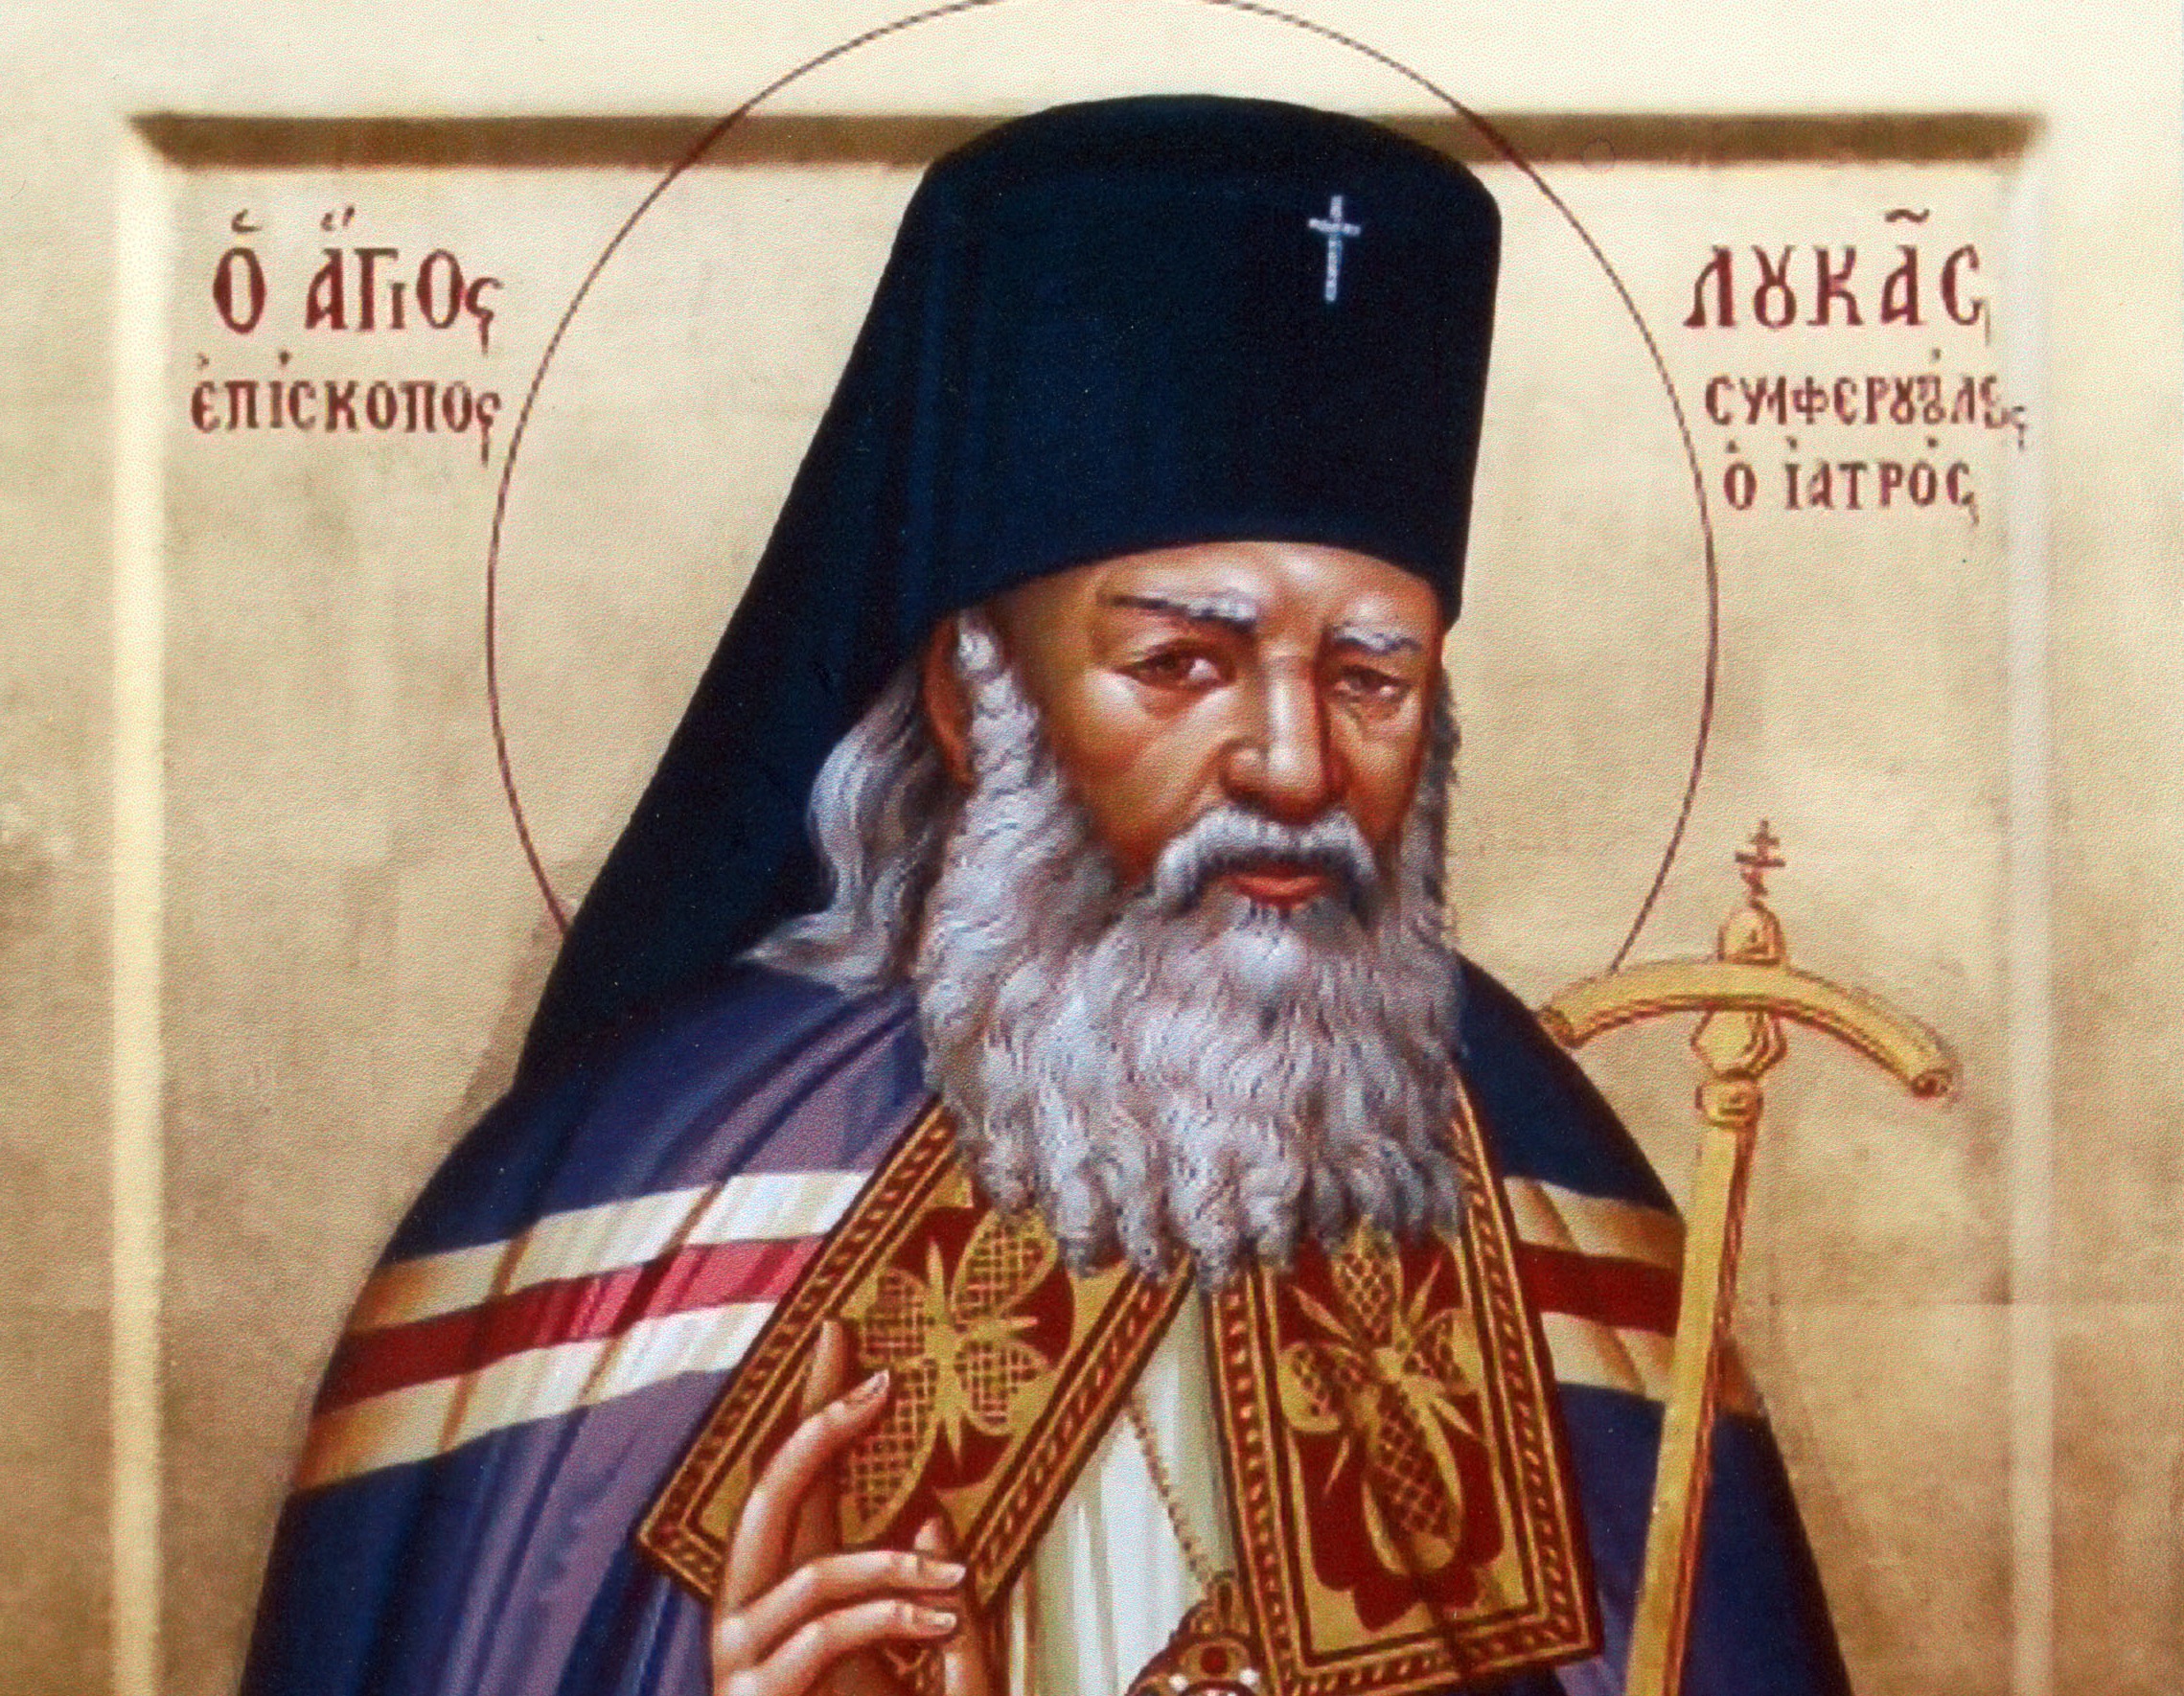 Αγίου Λουκά Αρχιεπισκόπου Κριμαίας: Επιστήμη και Θρησκεία